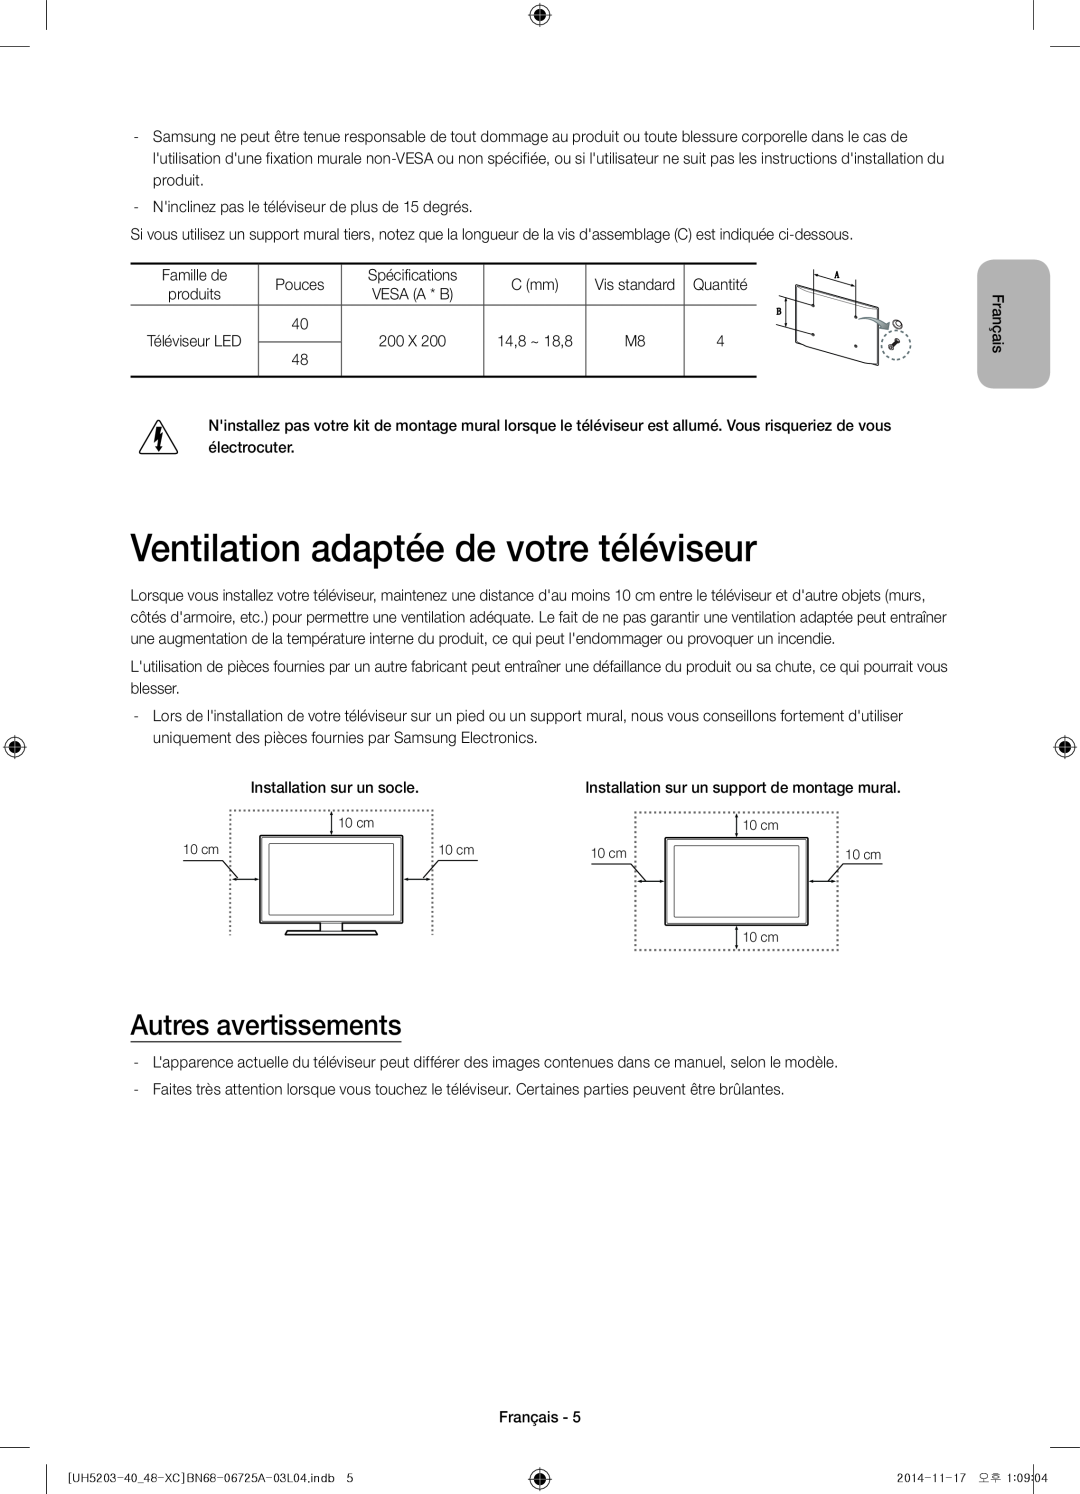 Samsung UE48H5203AWXXC, UE40H5203AWXXC manual Ventilation adaptée de votre téléviseur, Autres avertissements 